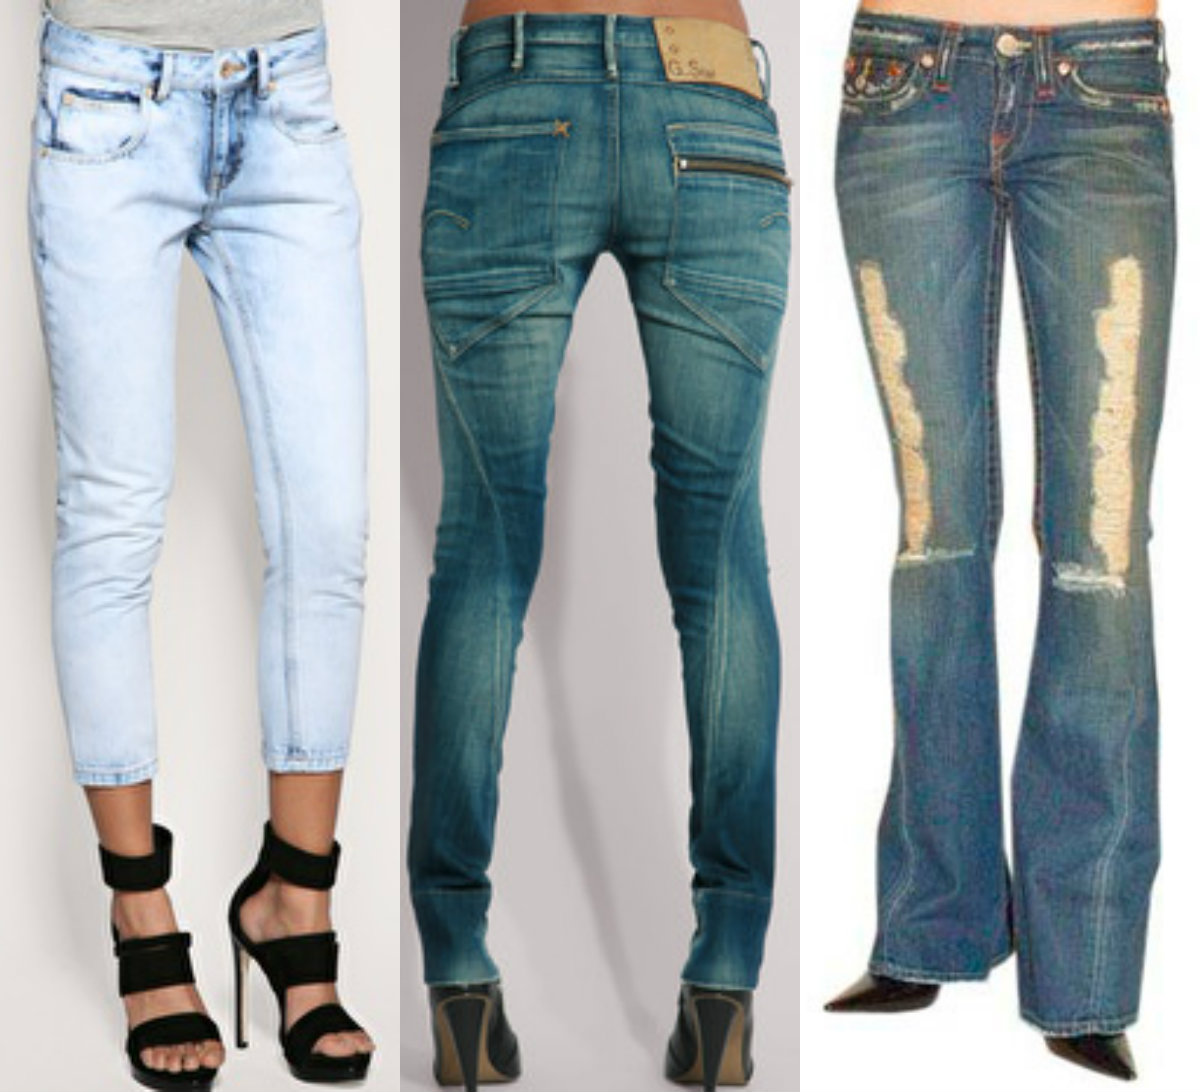 Разновидность джинсов женских с названием фото